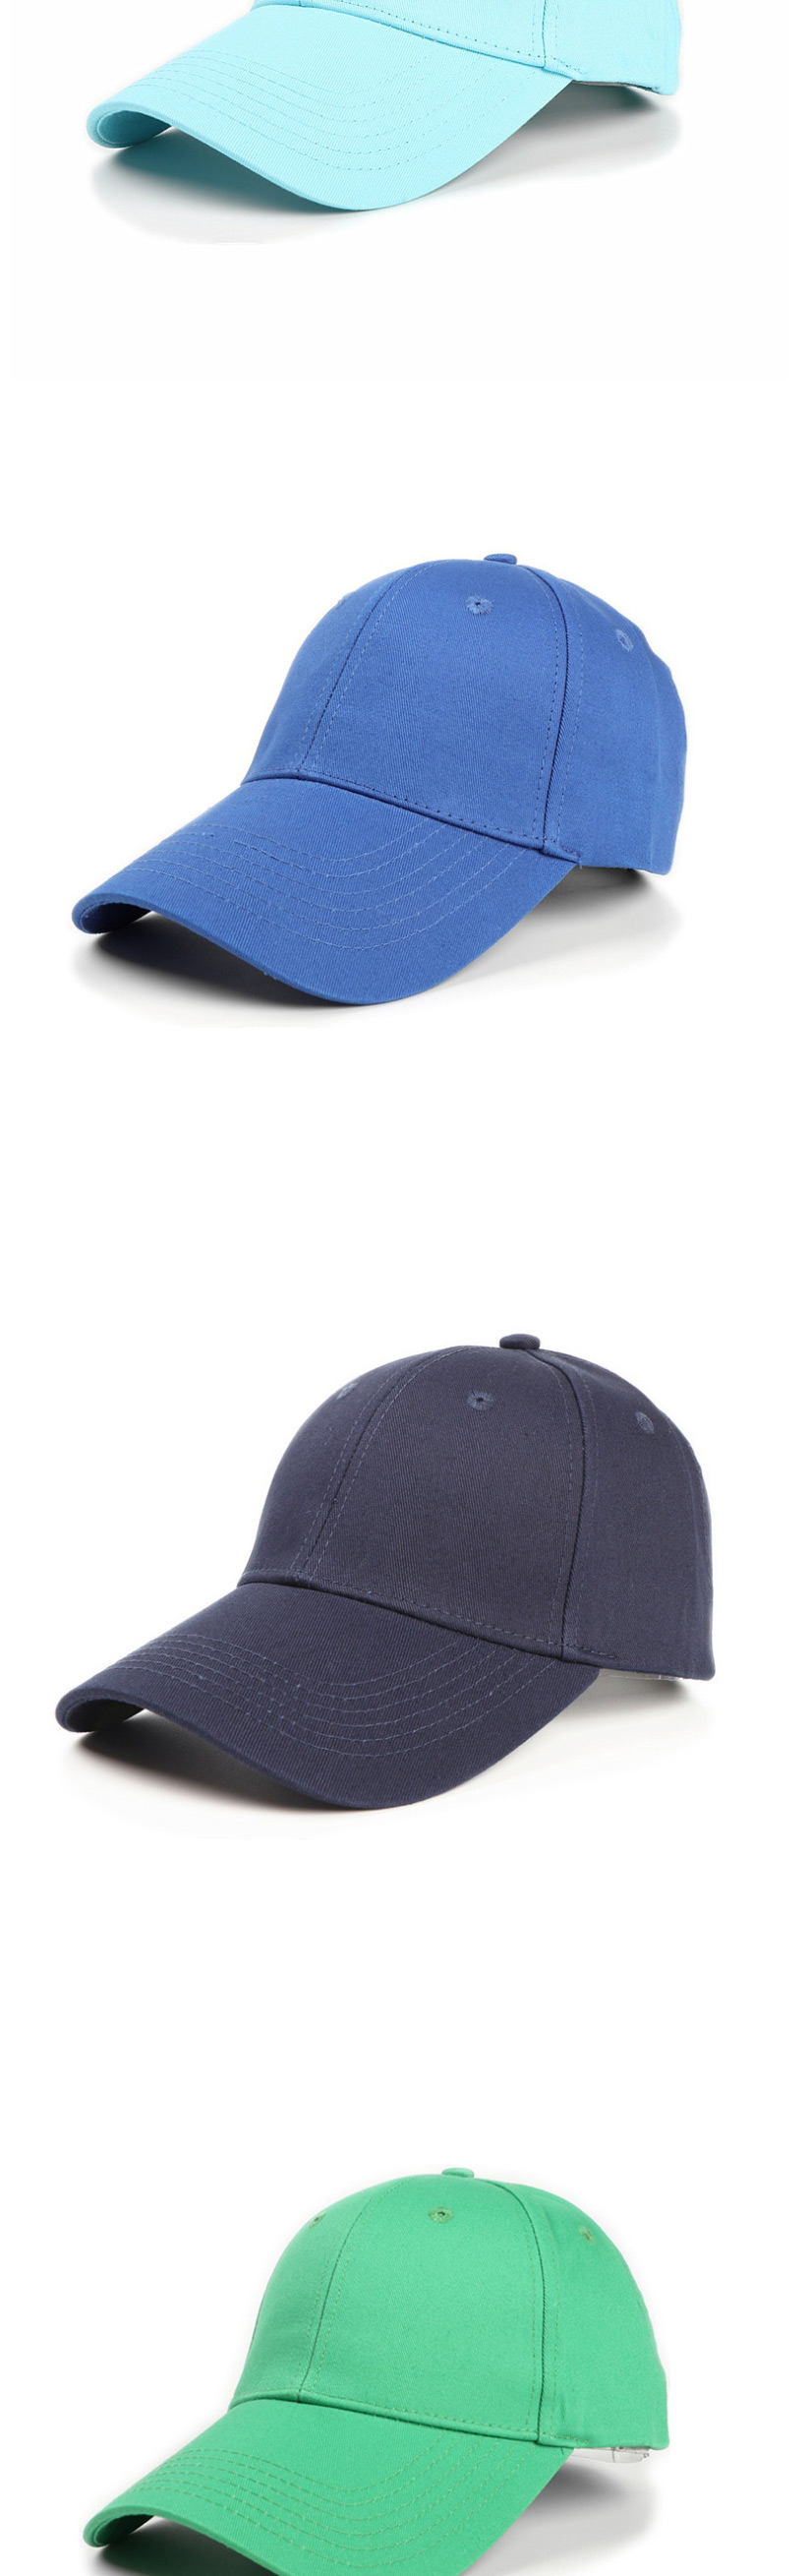 Fashion Navy Blue Cotton Hard Top And Long Brim Baseball Cap,Baseball Caps